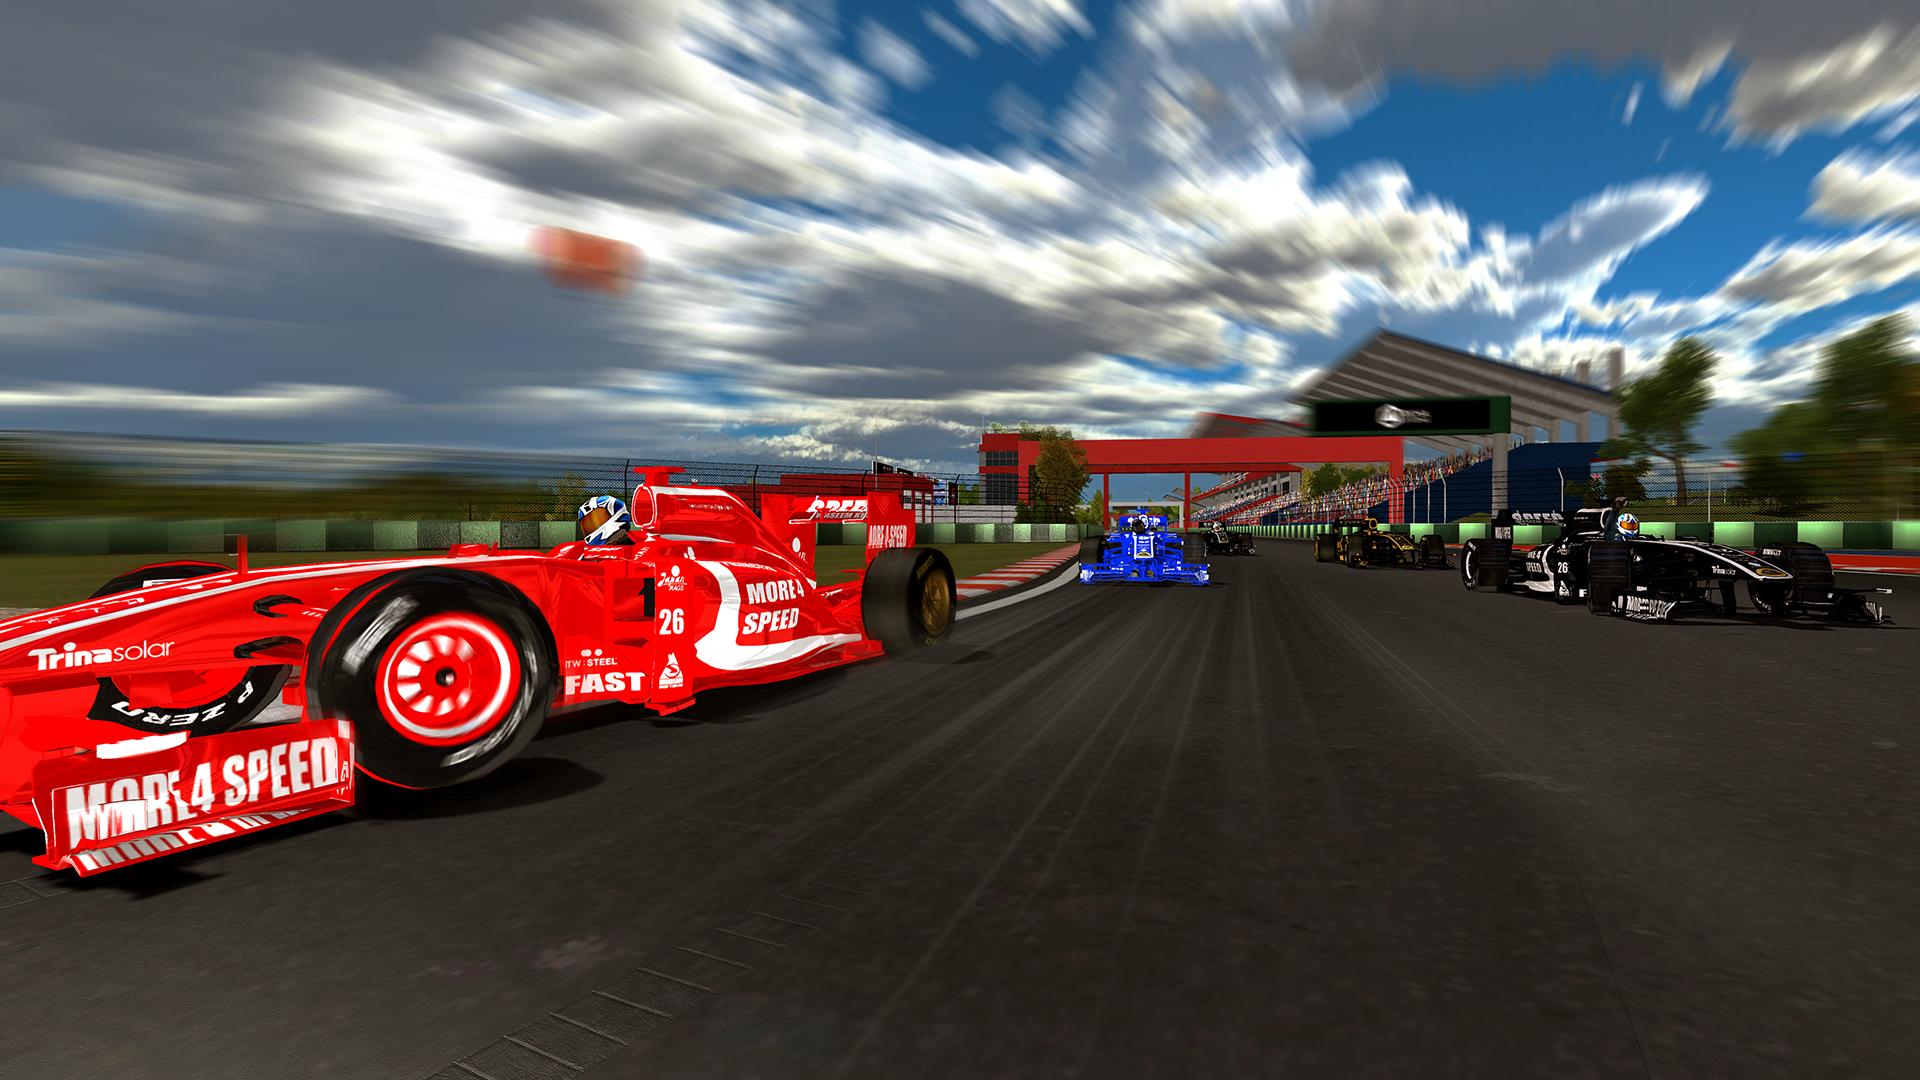 Car speed race. Formula 1 Racer. Racing Speed f1. Формула 1 кар паркинг. F1 track.